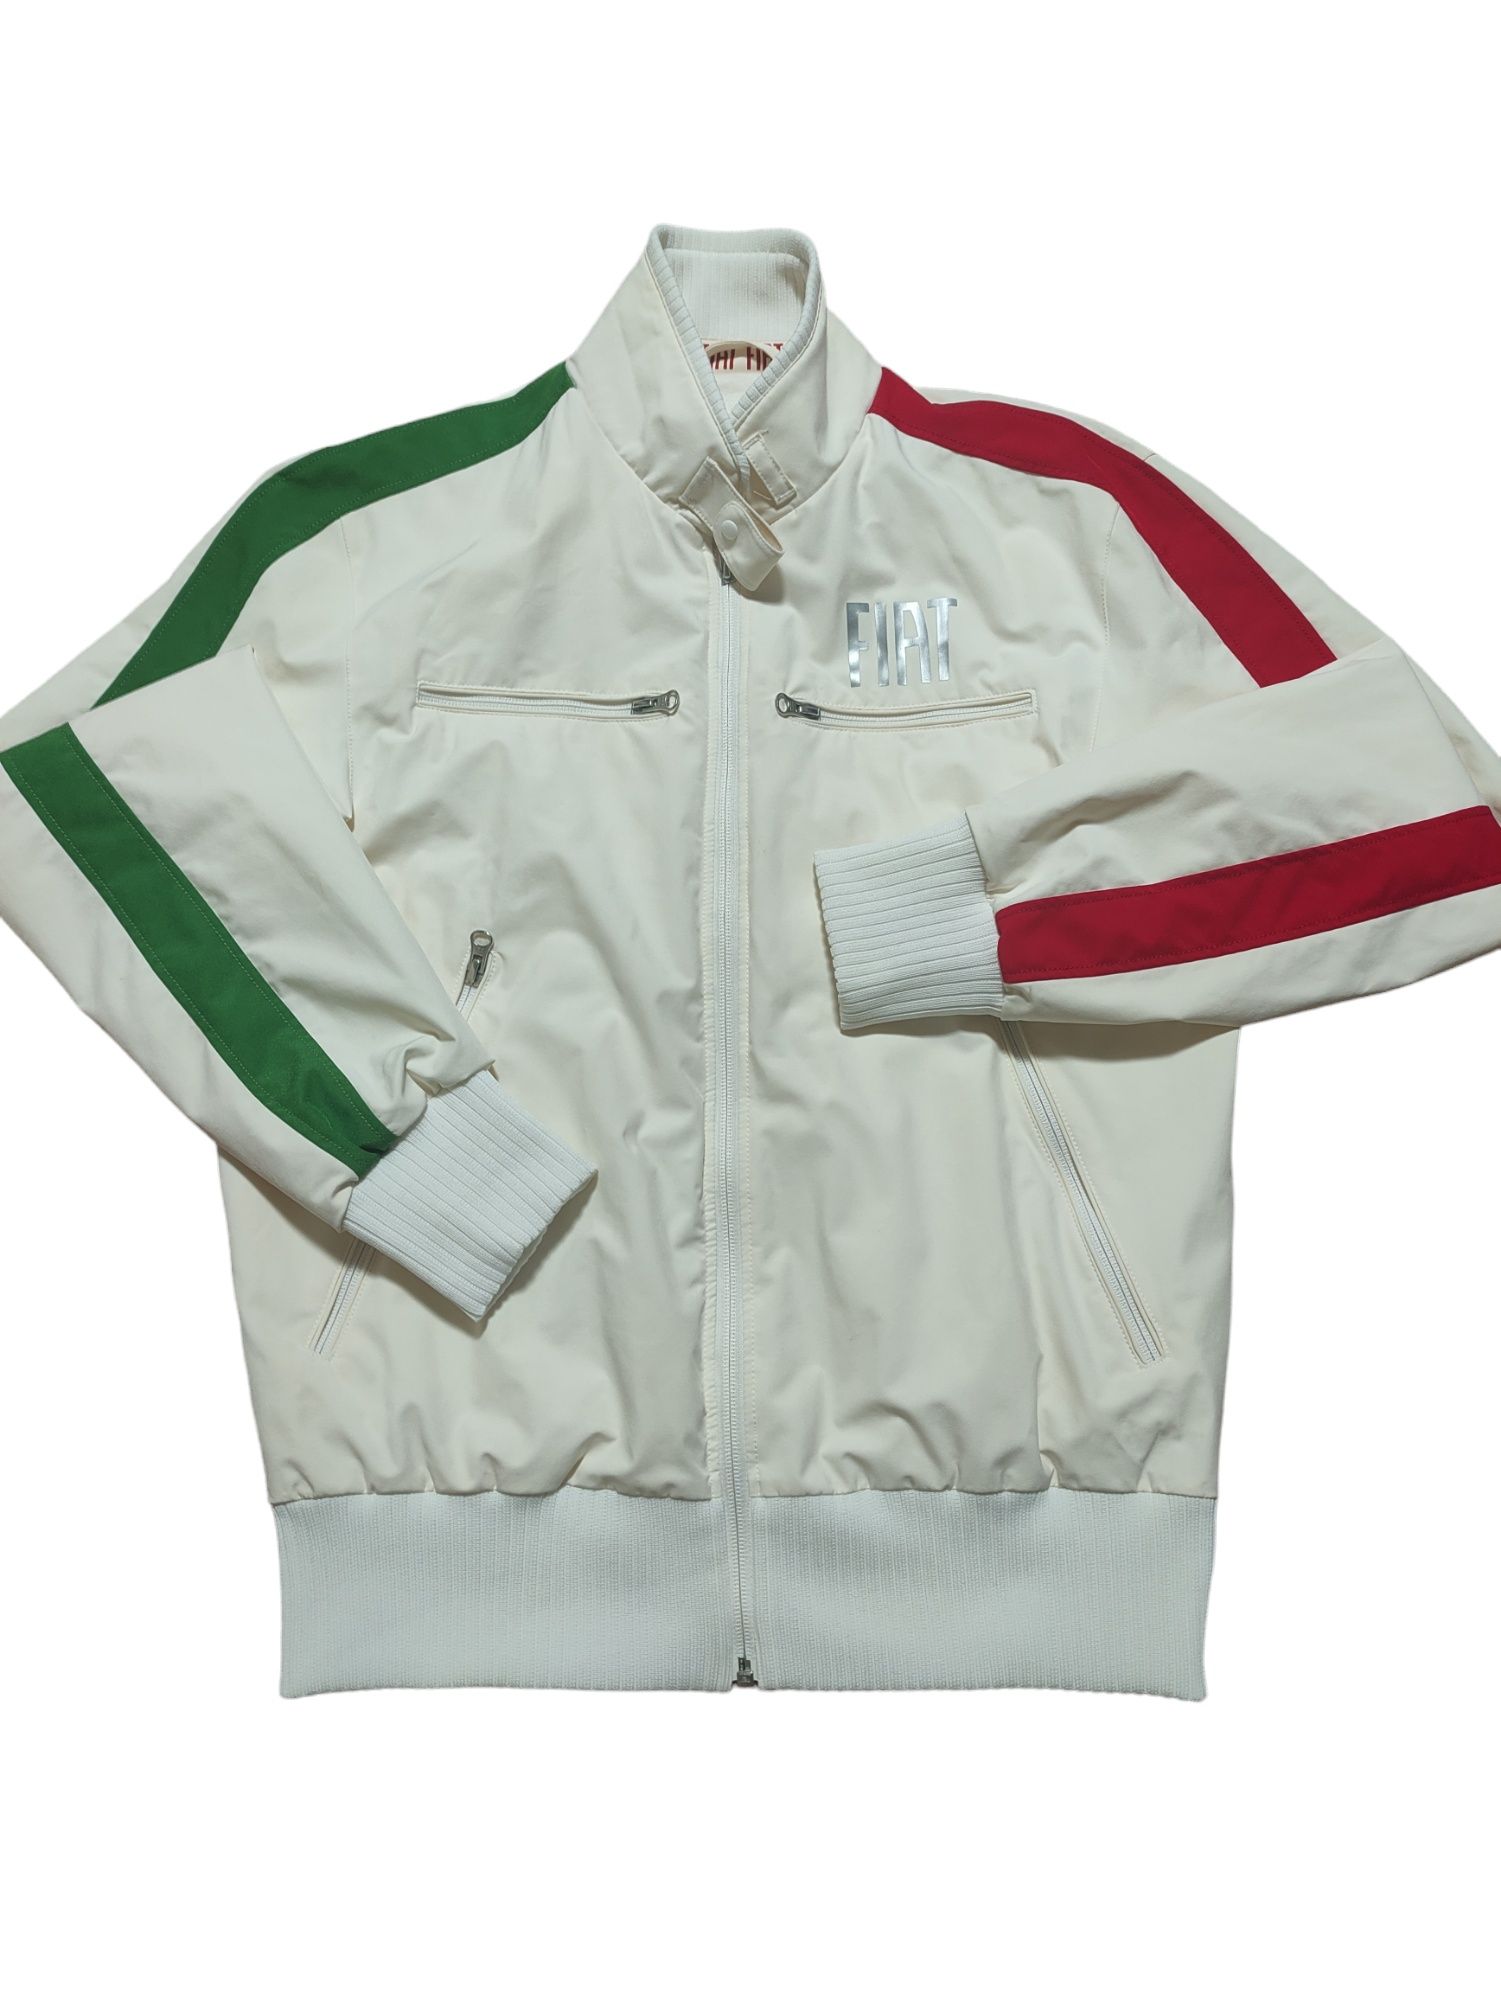 Куртка ветровка Fiat originals оригинал